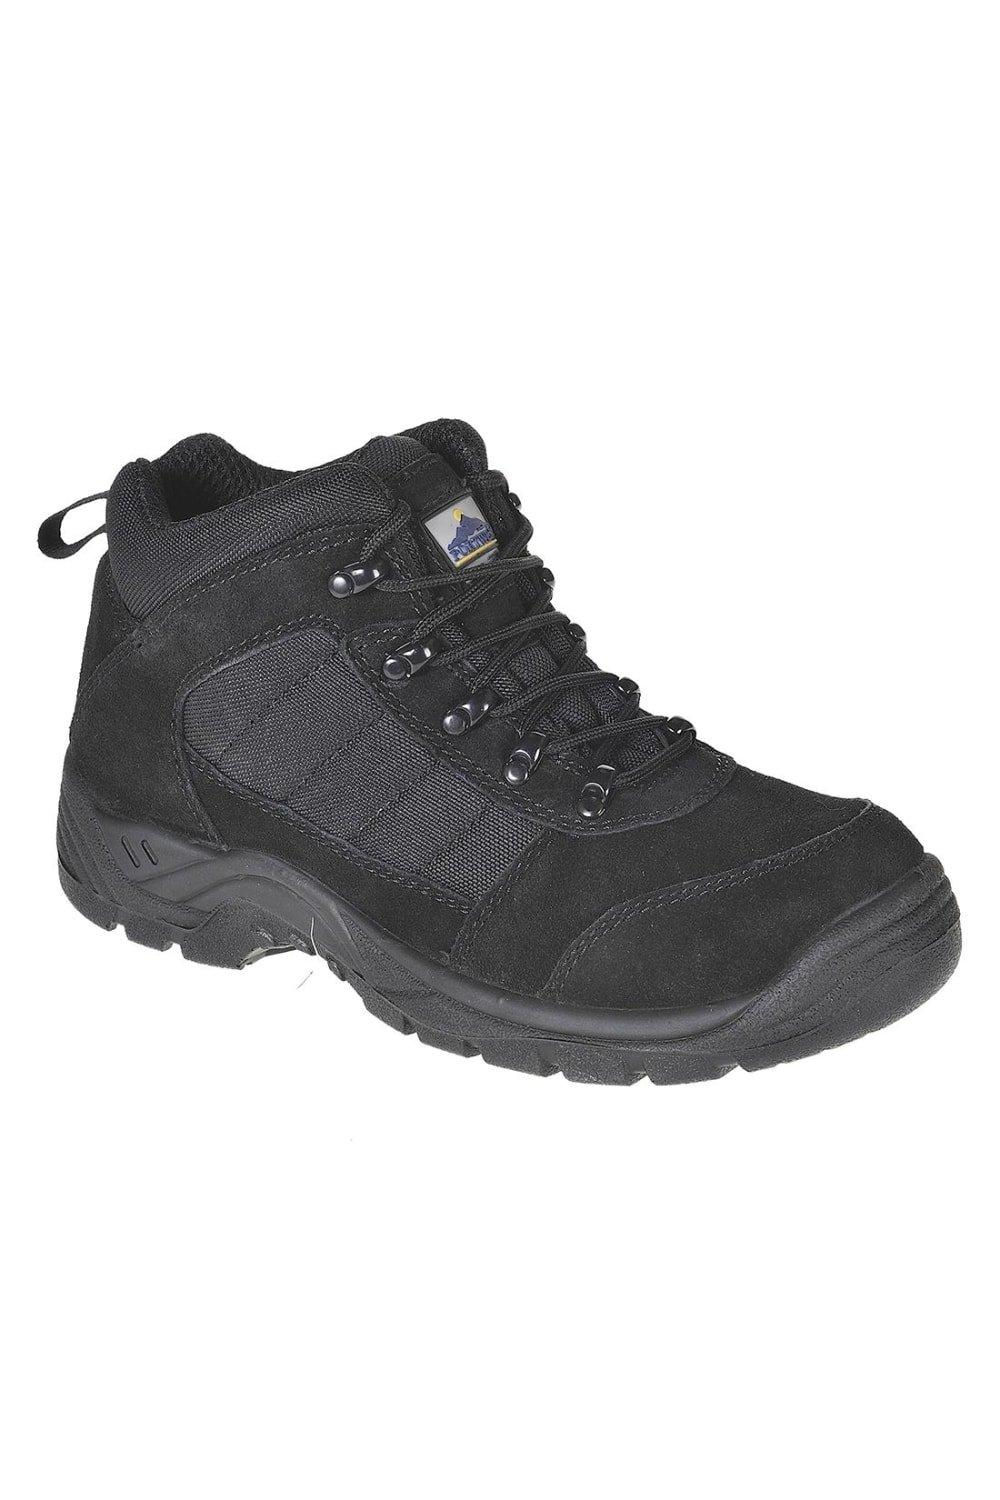 Замшевые защитные ботинки Steelite Trouper Portwest, черный цена и фото